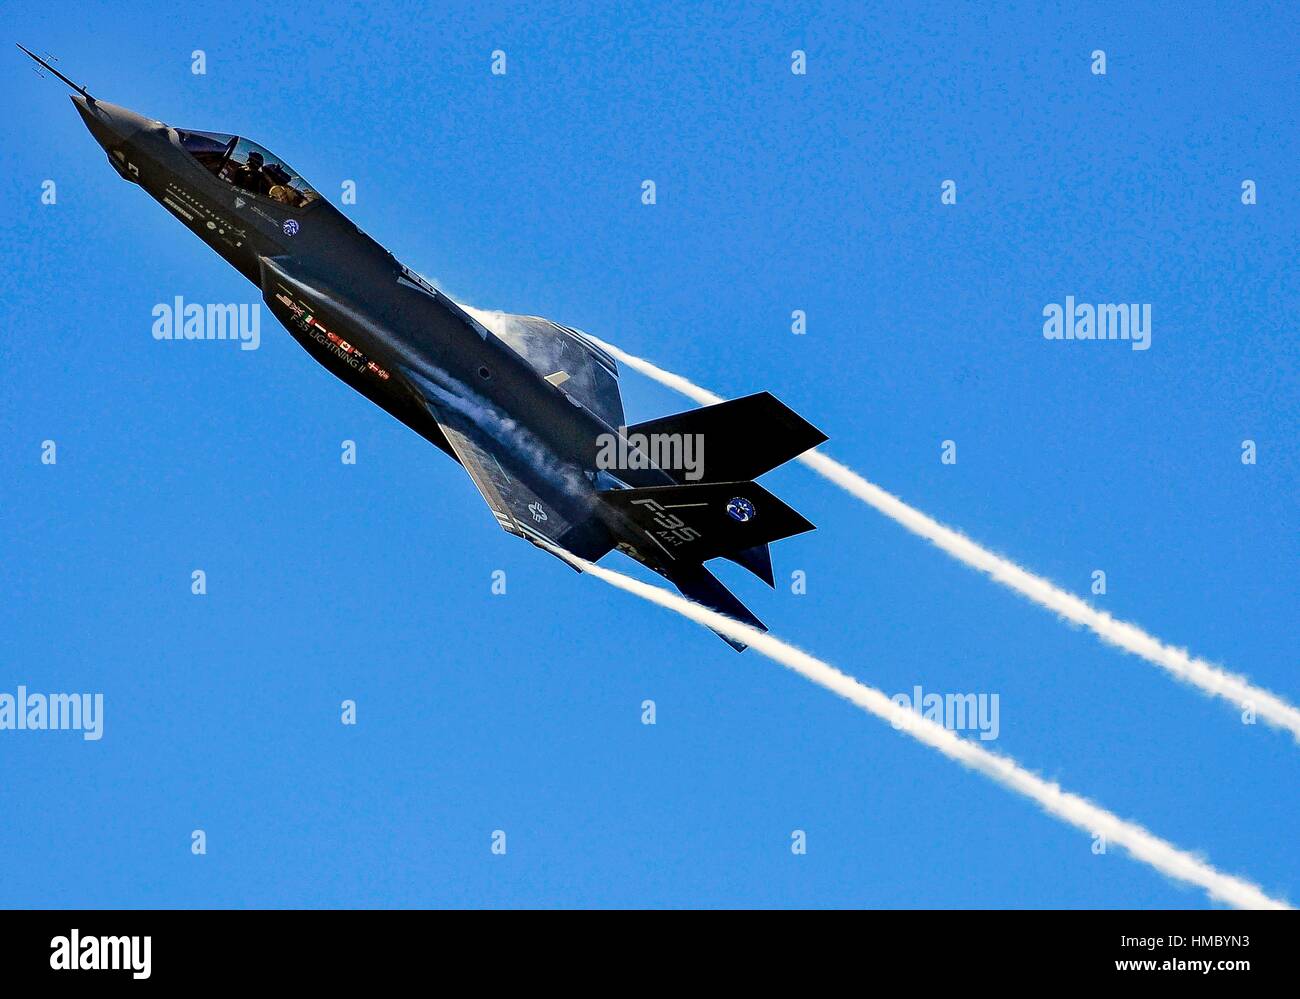 Eine F-35 Lightning ii Joint Strike Fighter test aircraft Banken über die flightline in Eglin Air Force Base, Fla. , 23. April, Senden von Kondensstreifen Stockfoto